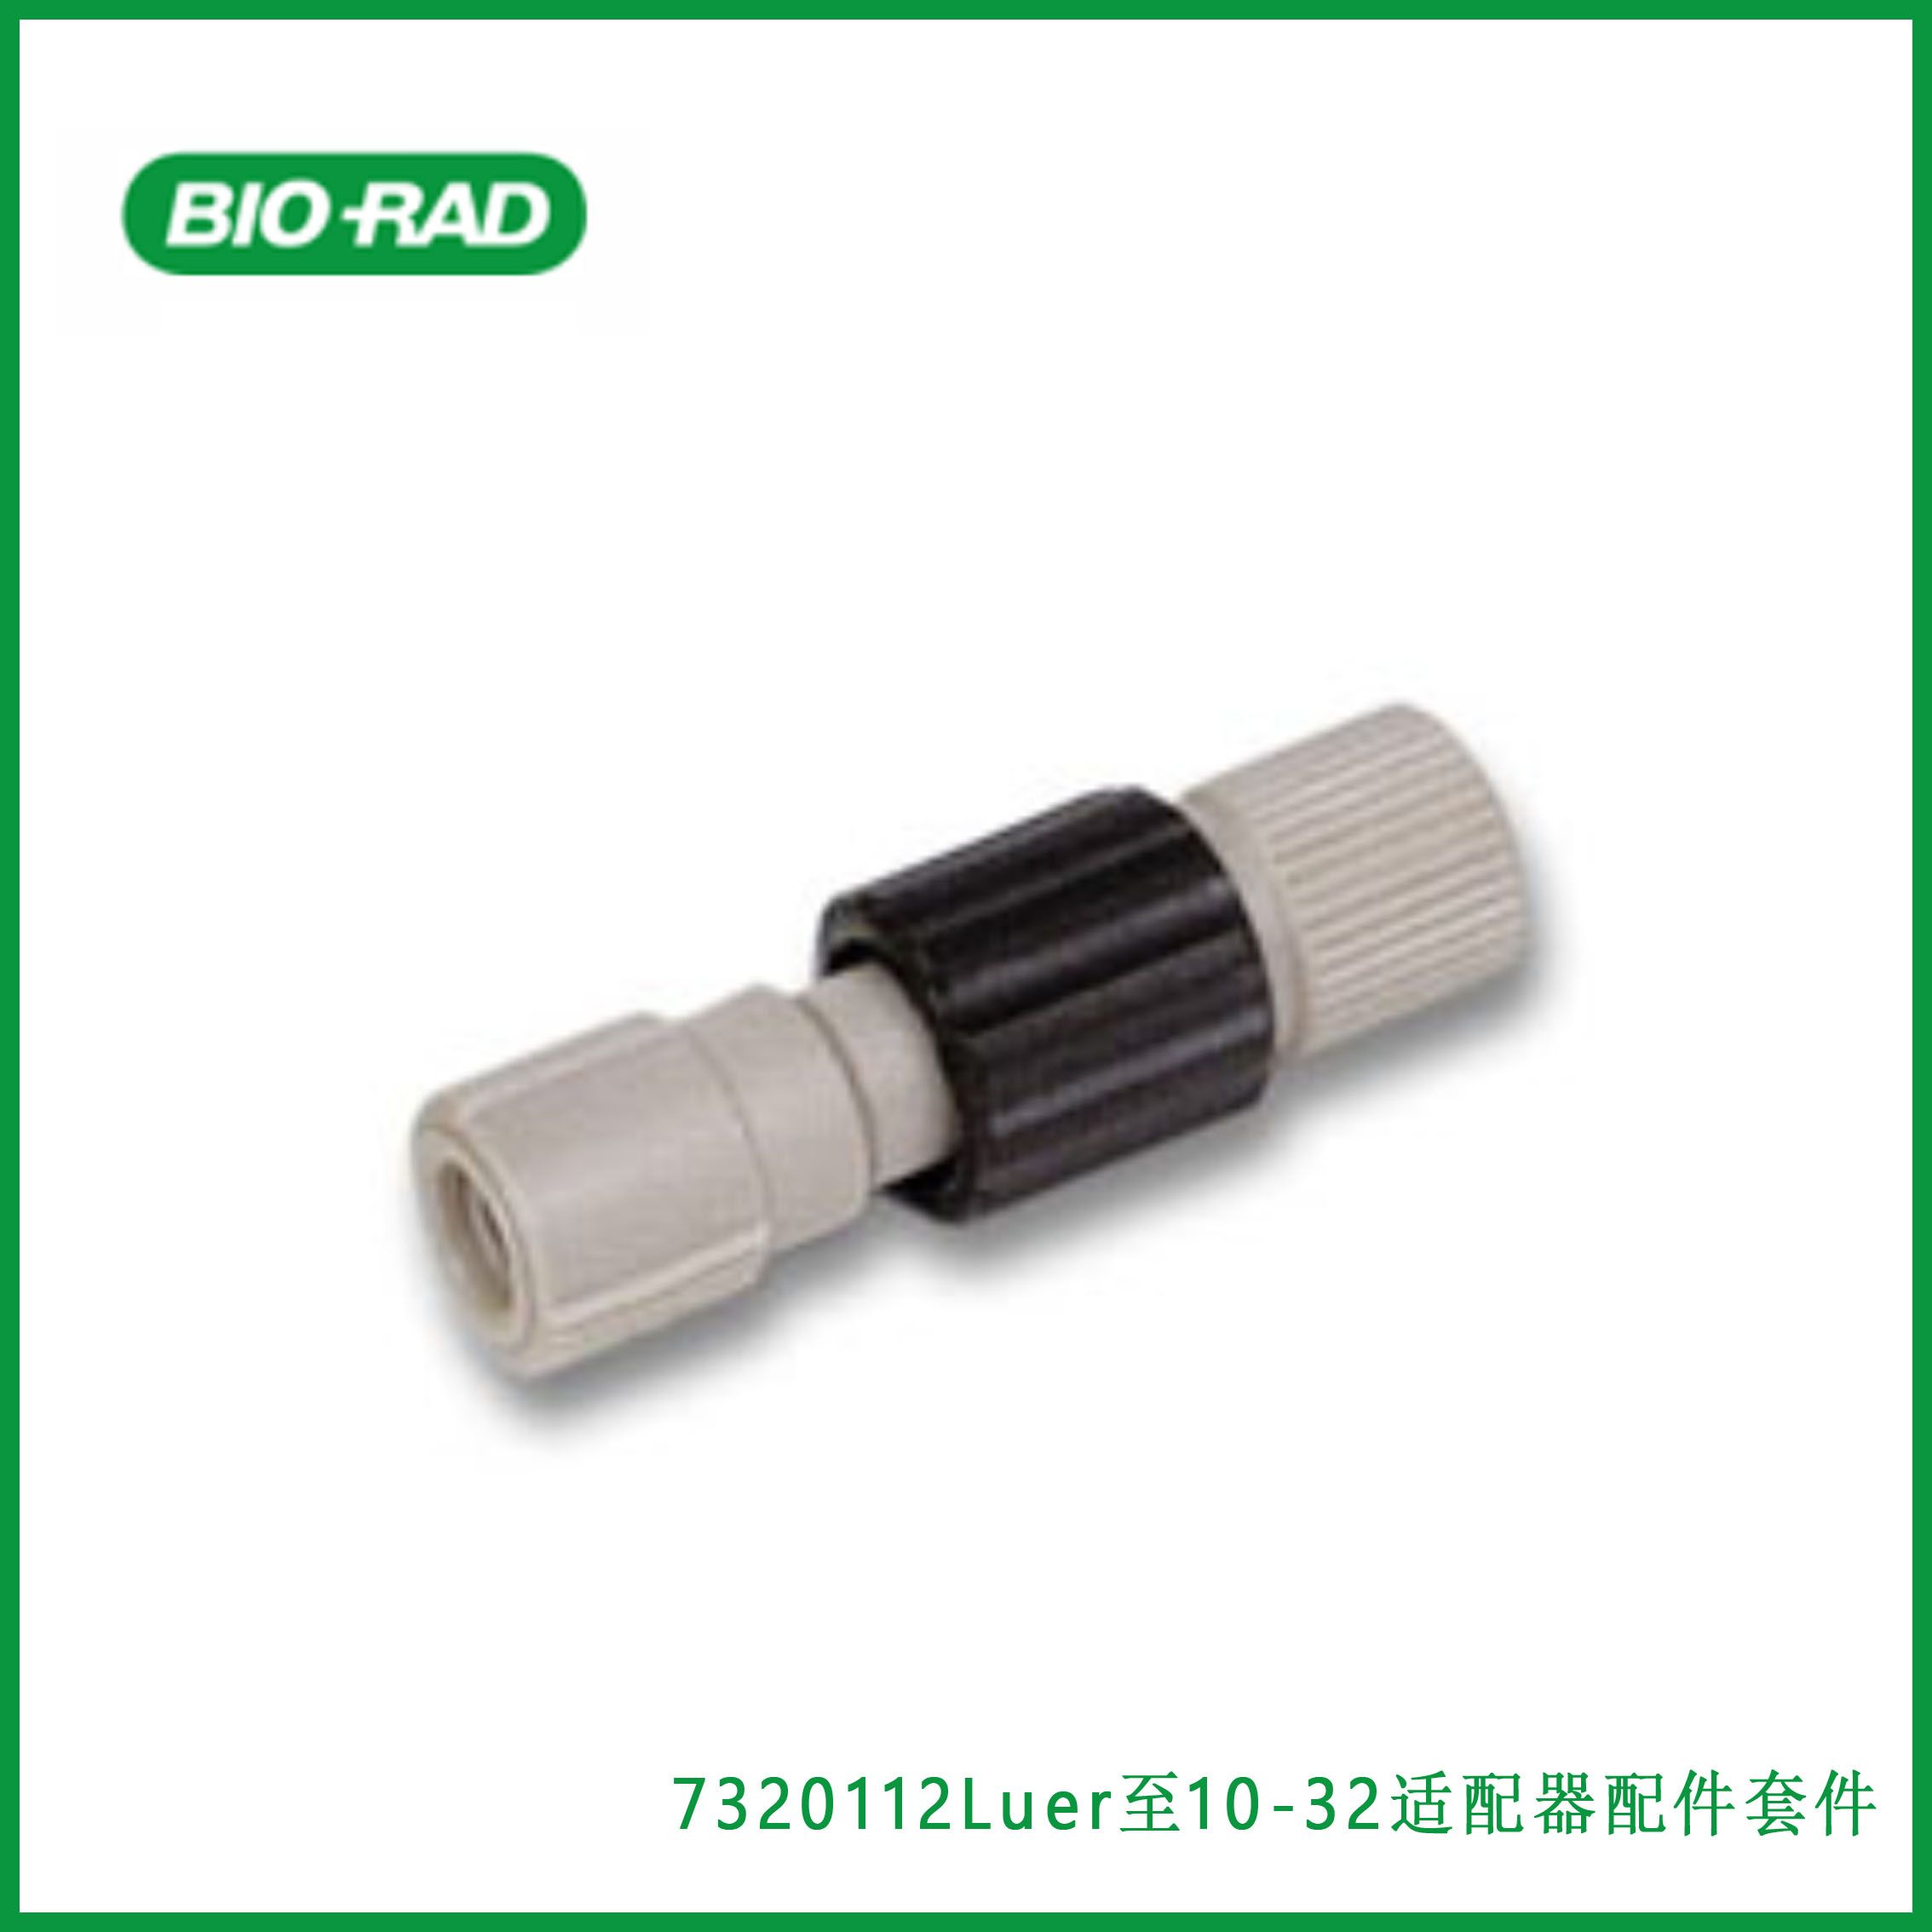 伯乐Bio-Rad 7320112 Luer to 10-32 Adaptor Fittings Kit，Luer至10-32适配器配件套件，现货